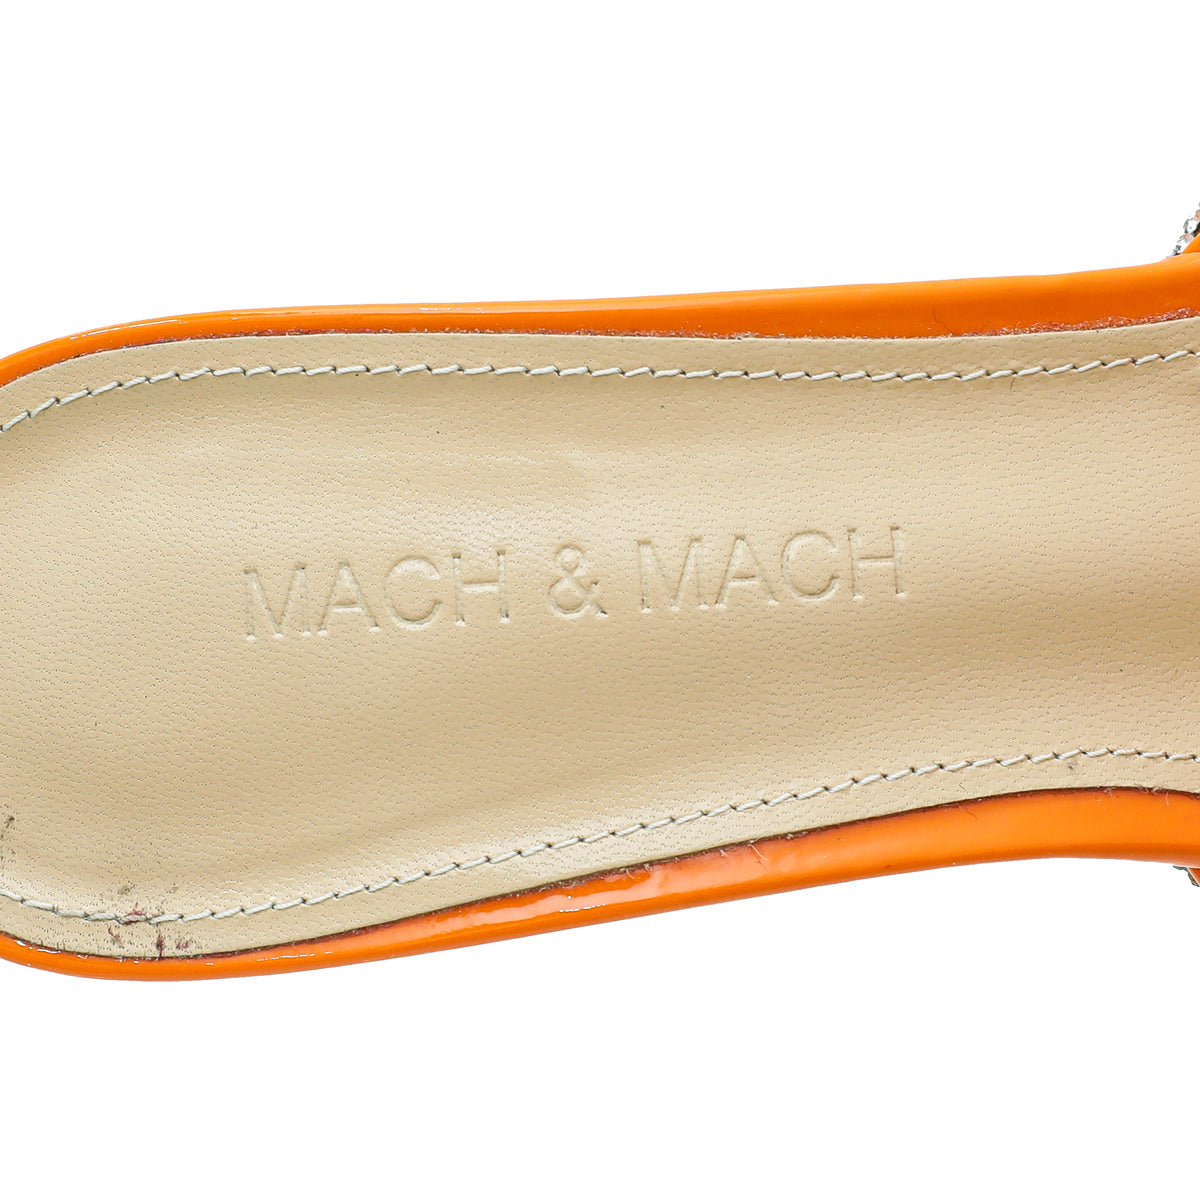 Mach & Mach Orange Crysrtal Bow PVC Mules 38